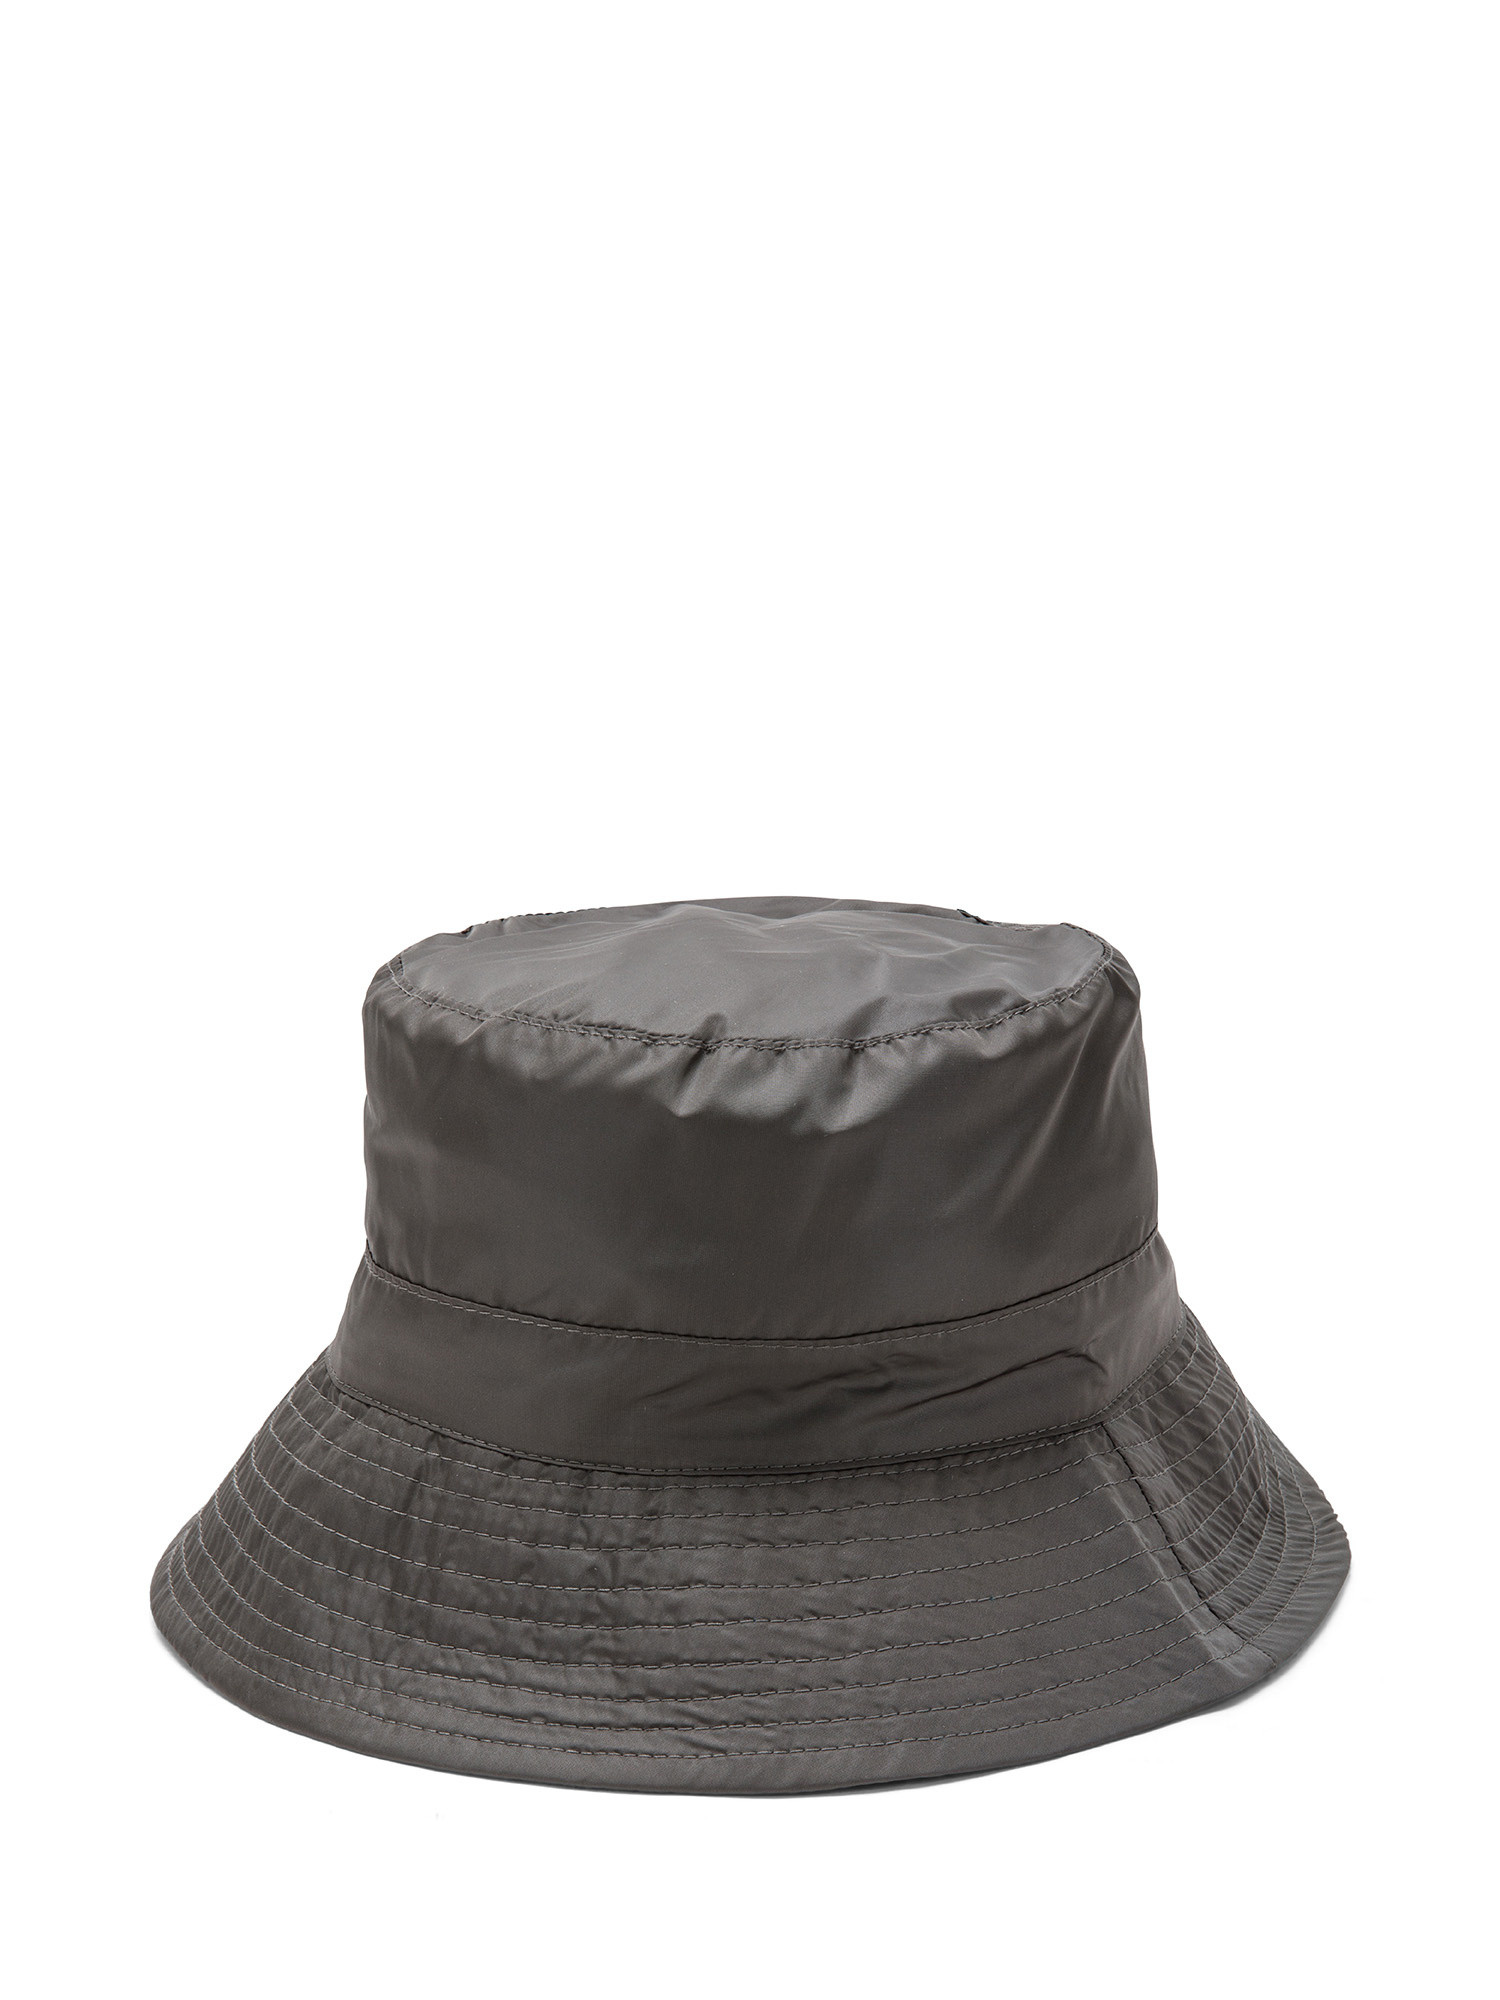 Koan - Nylon hat, Dark Grey, large image number 0